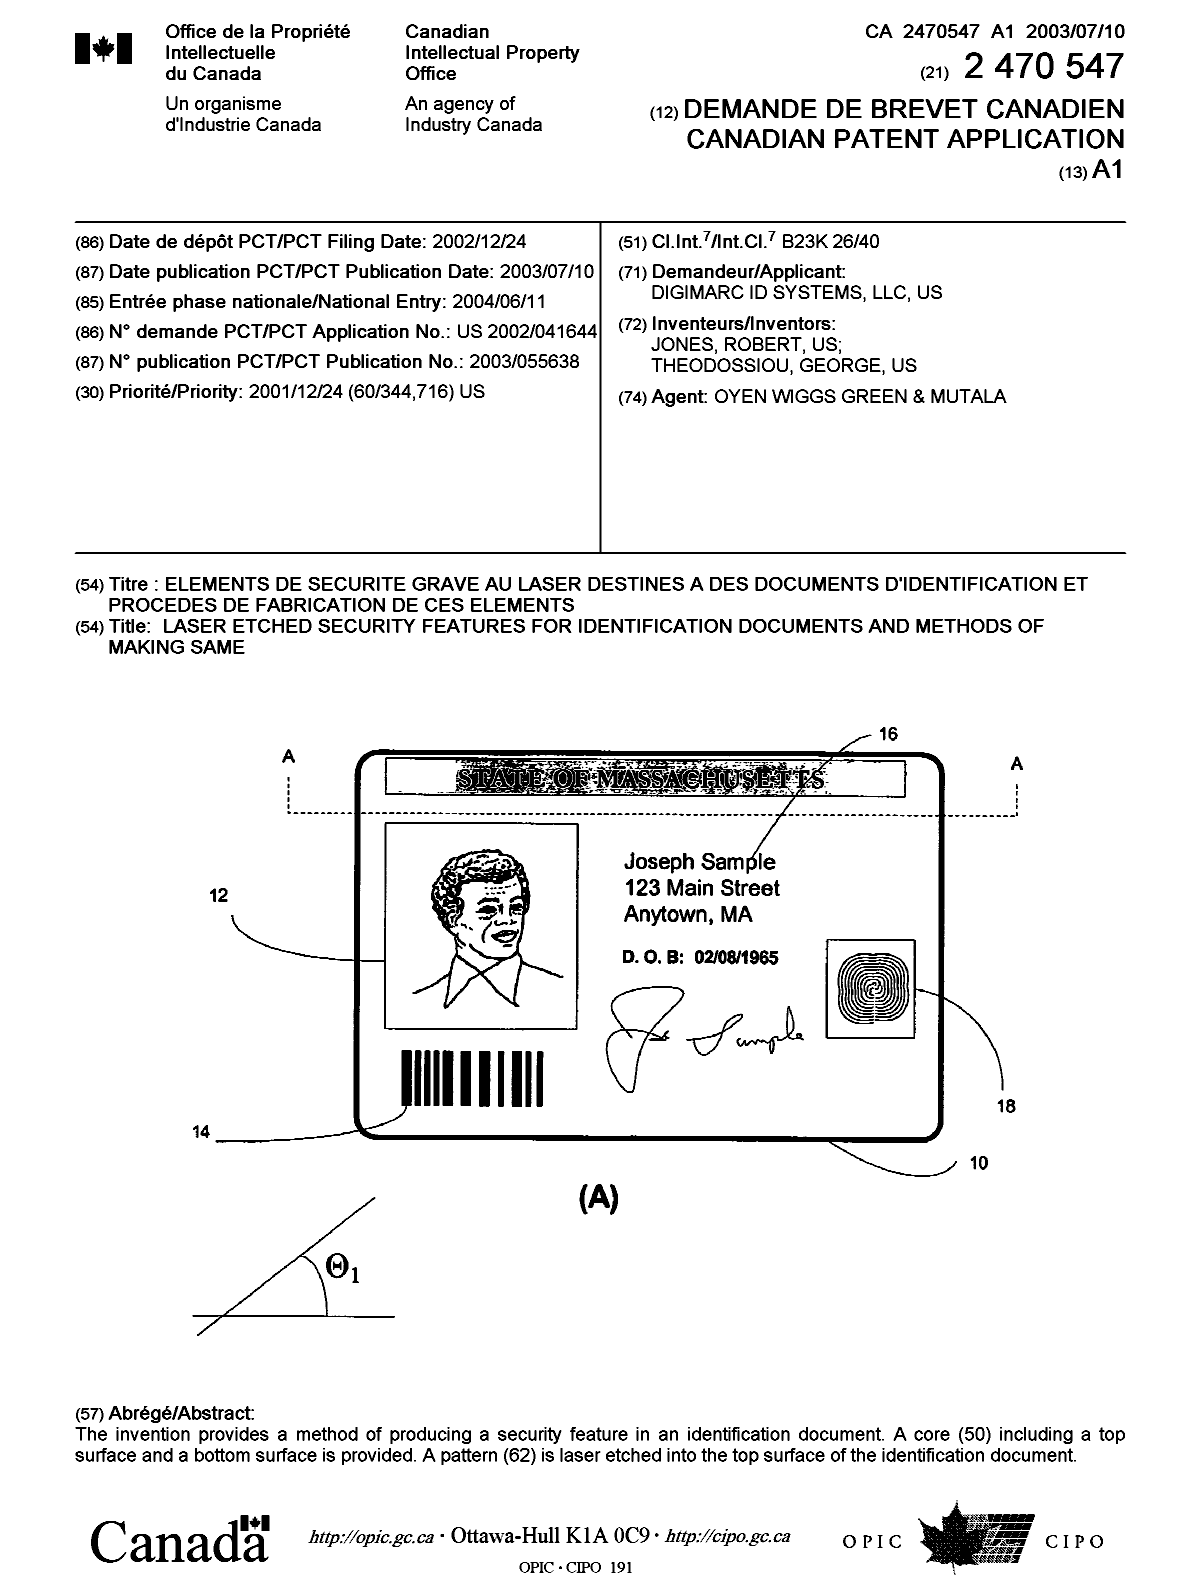 Document de brevet canadien 2470547. Page couverture 20040823. Image 1 de 1